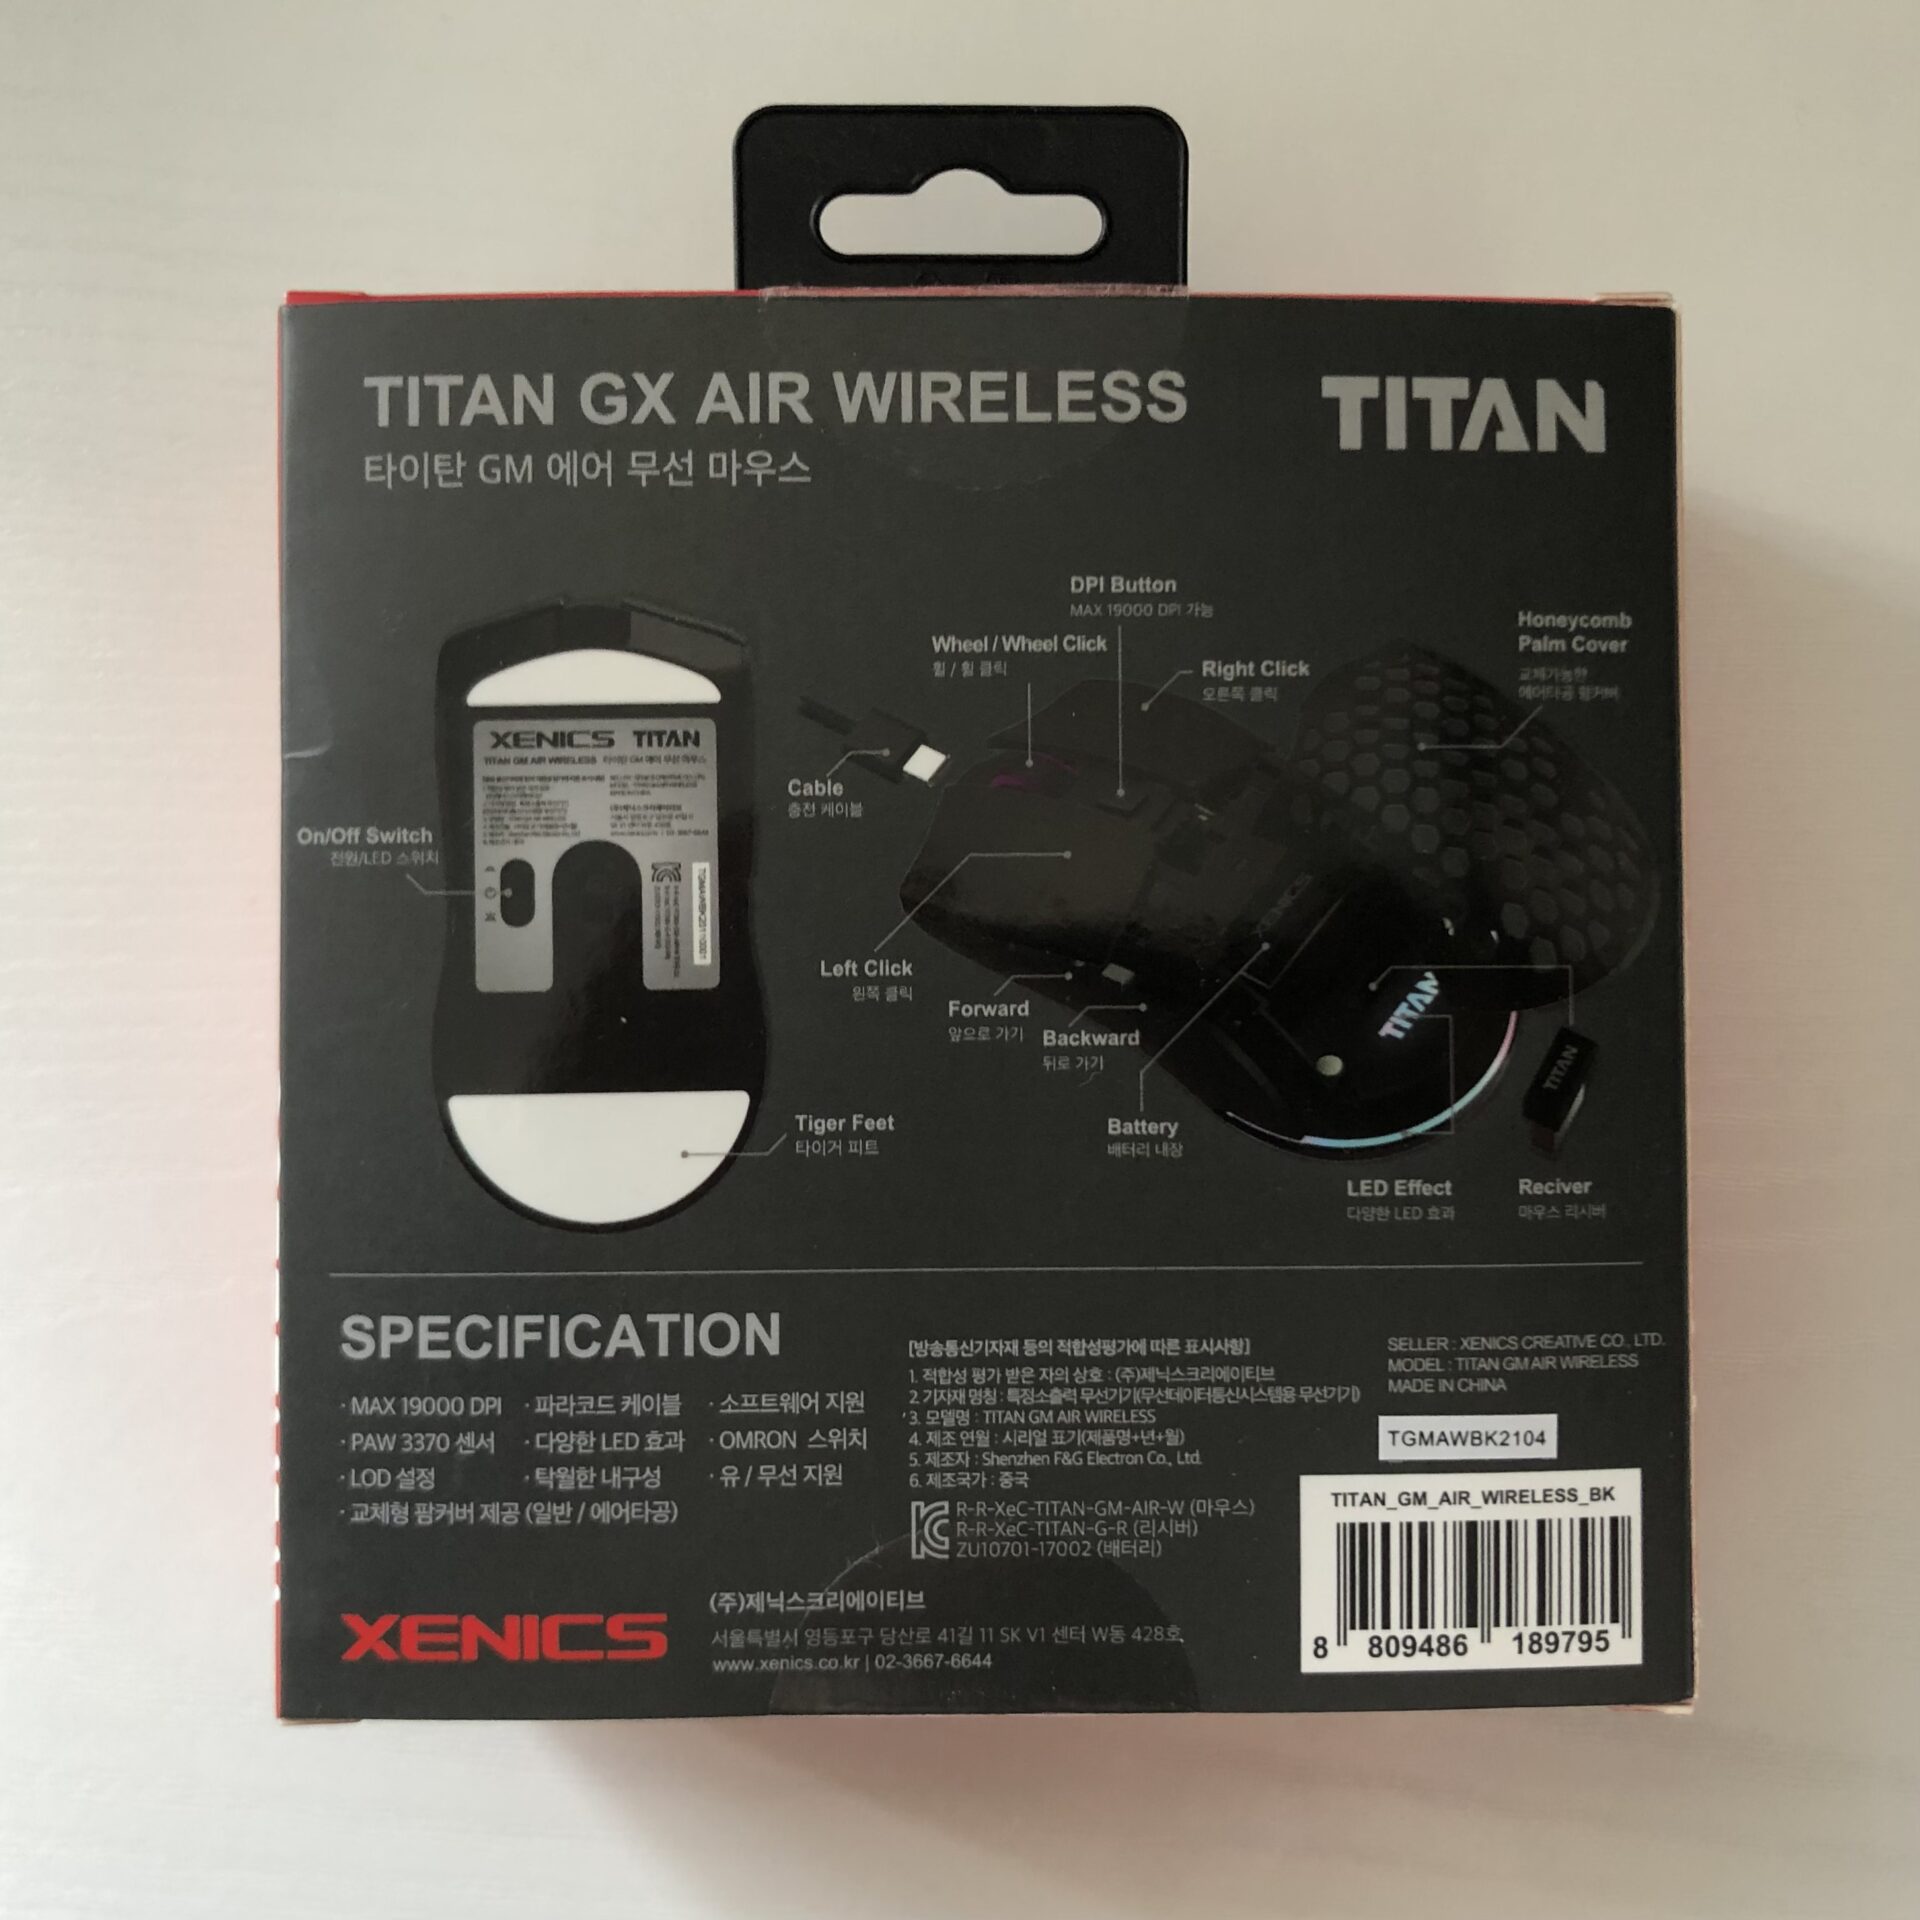 gm air wireless behind package